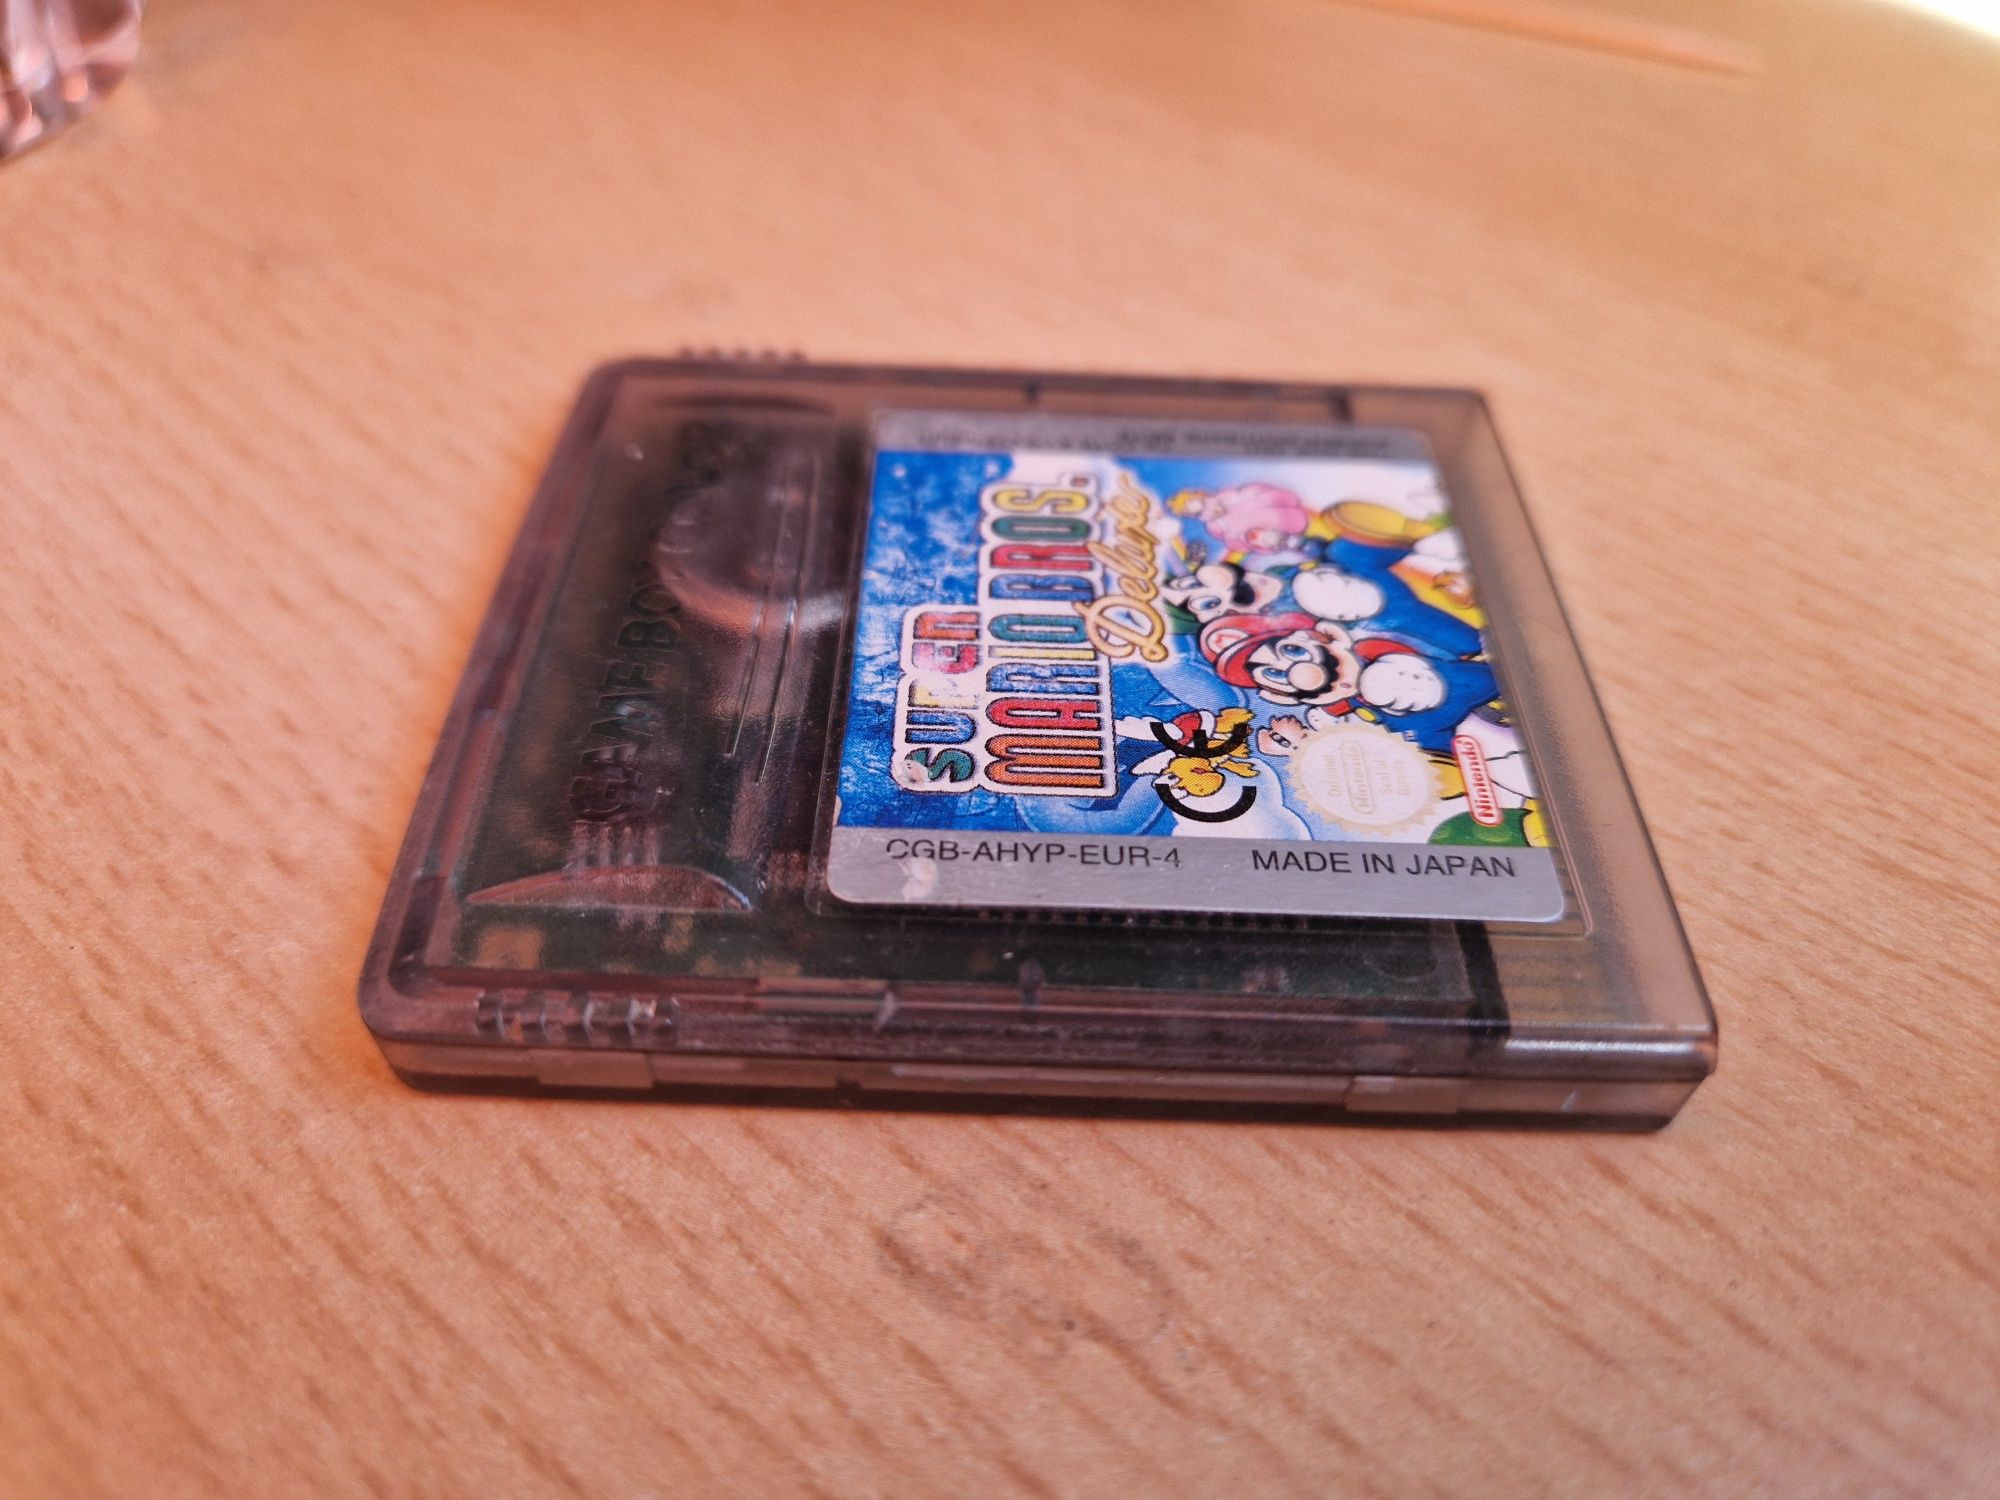 Super Mario Bros Deluxe. Joc Nitendo Gameboy, Color- GBC.